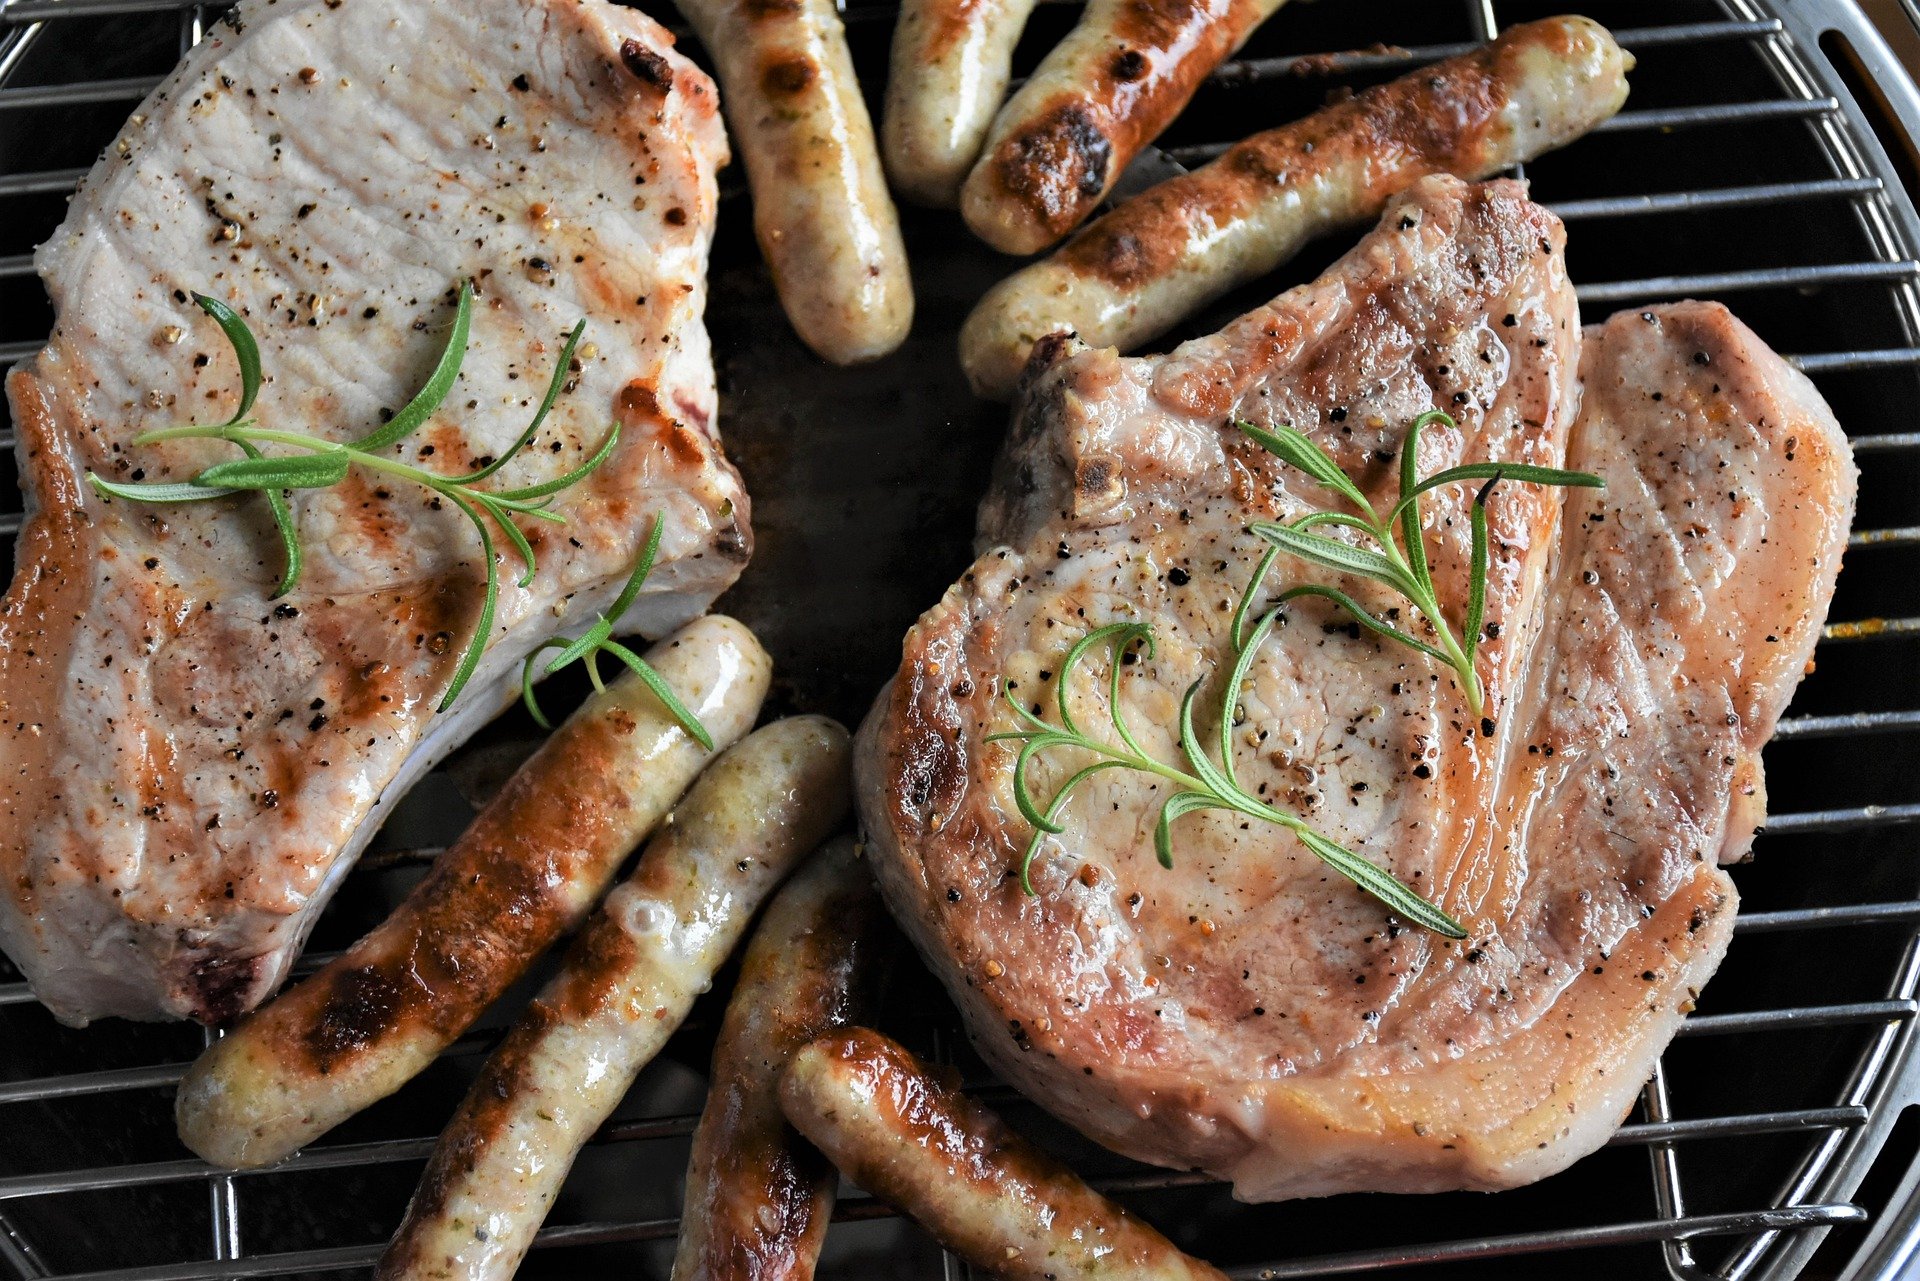 meat 4231141 1920.jpg?resize=412,275 - Innovation : Une viande de porc végétale qui ressemble à s'y méprendre à du porc